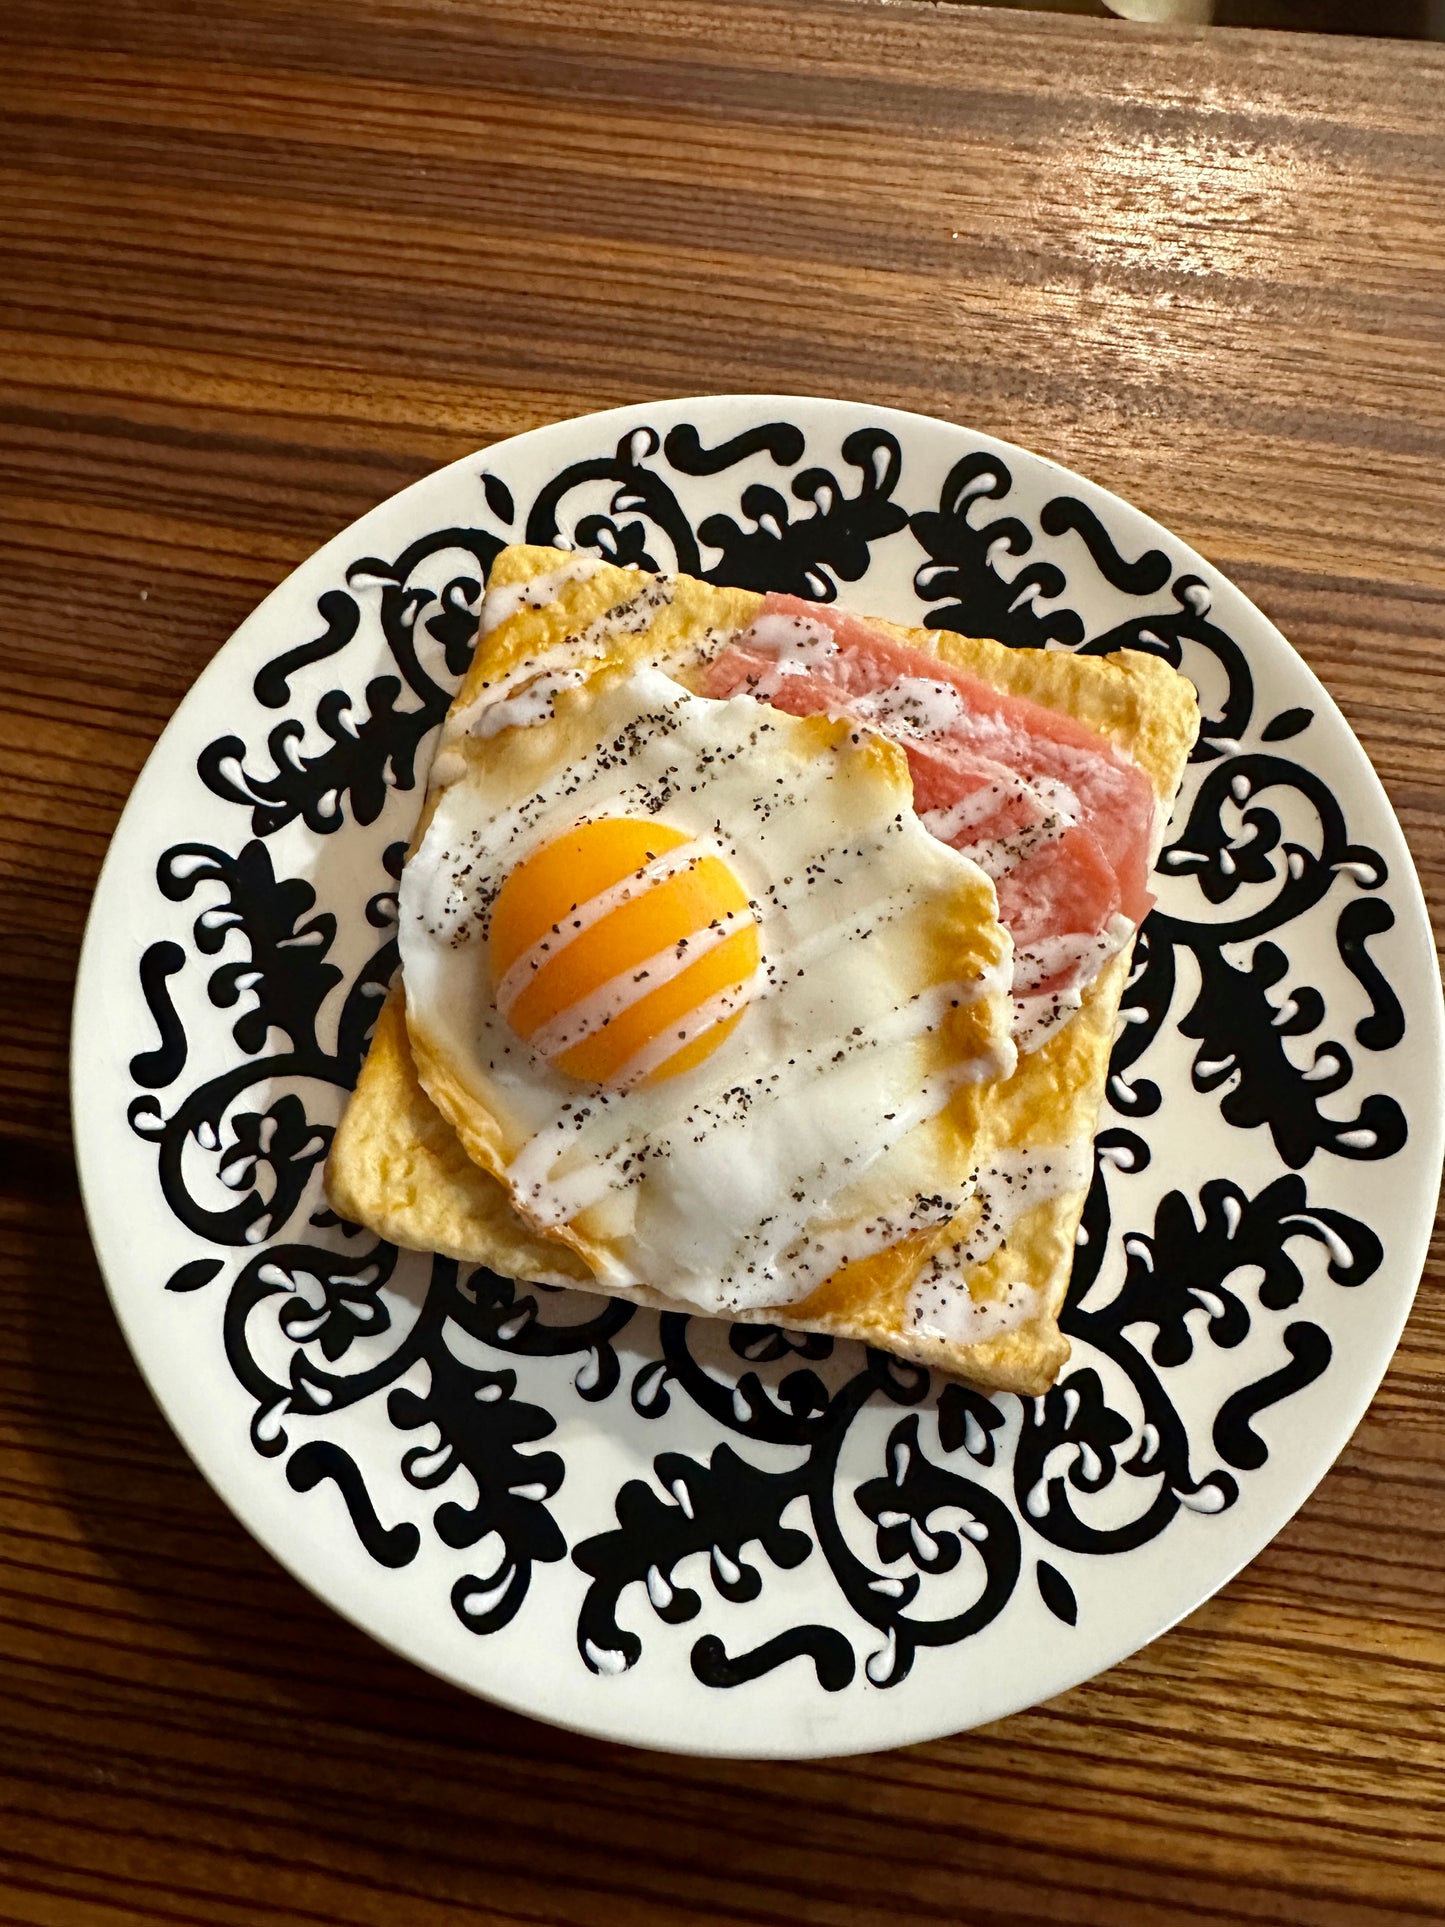 Eggs, Ham, and Toast